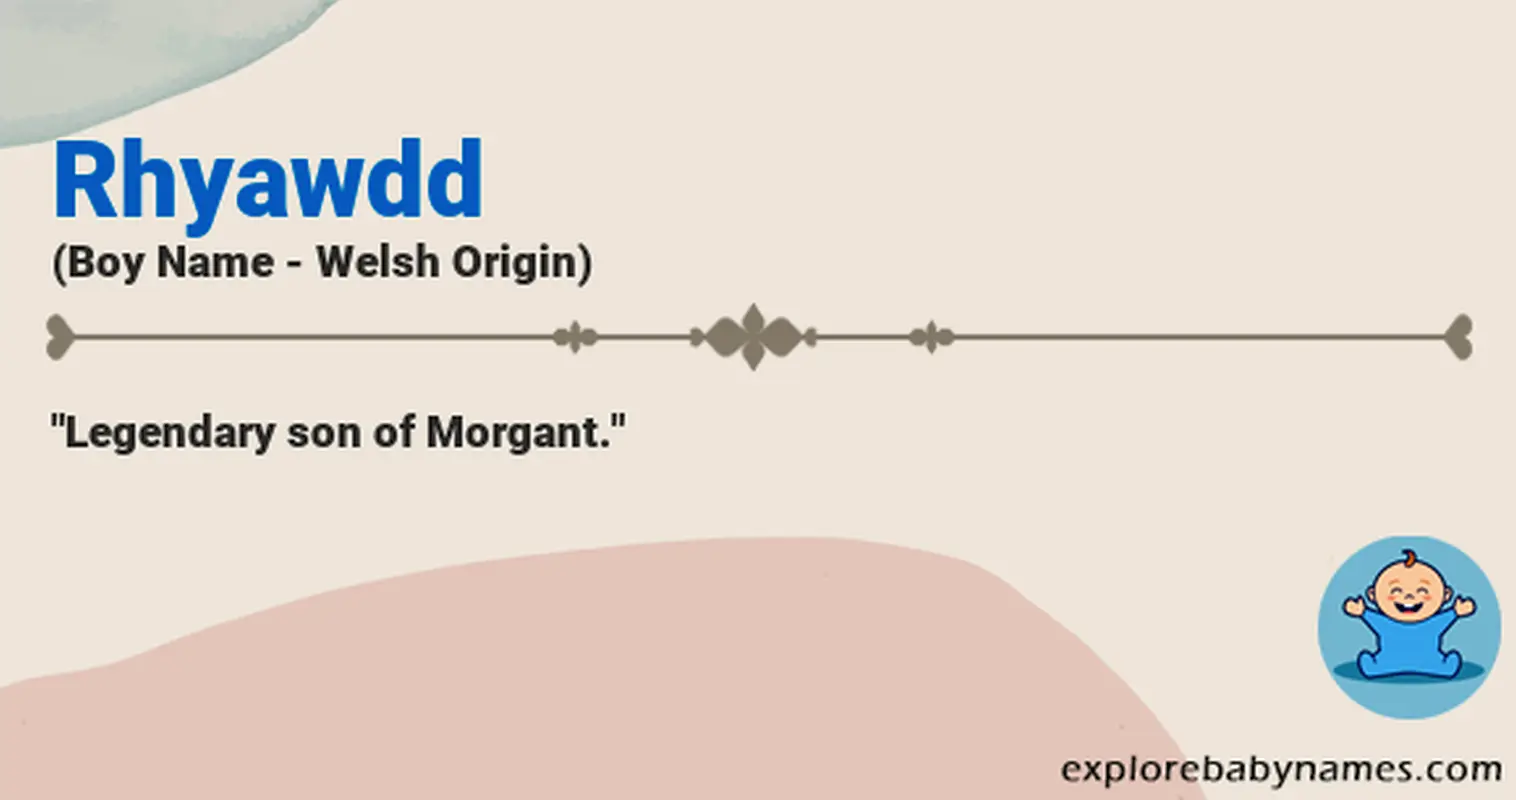 Meaning of Rhyawdd